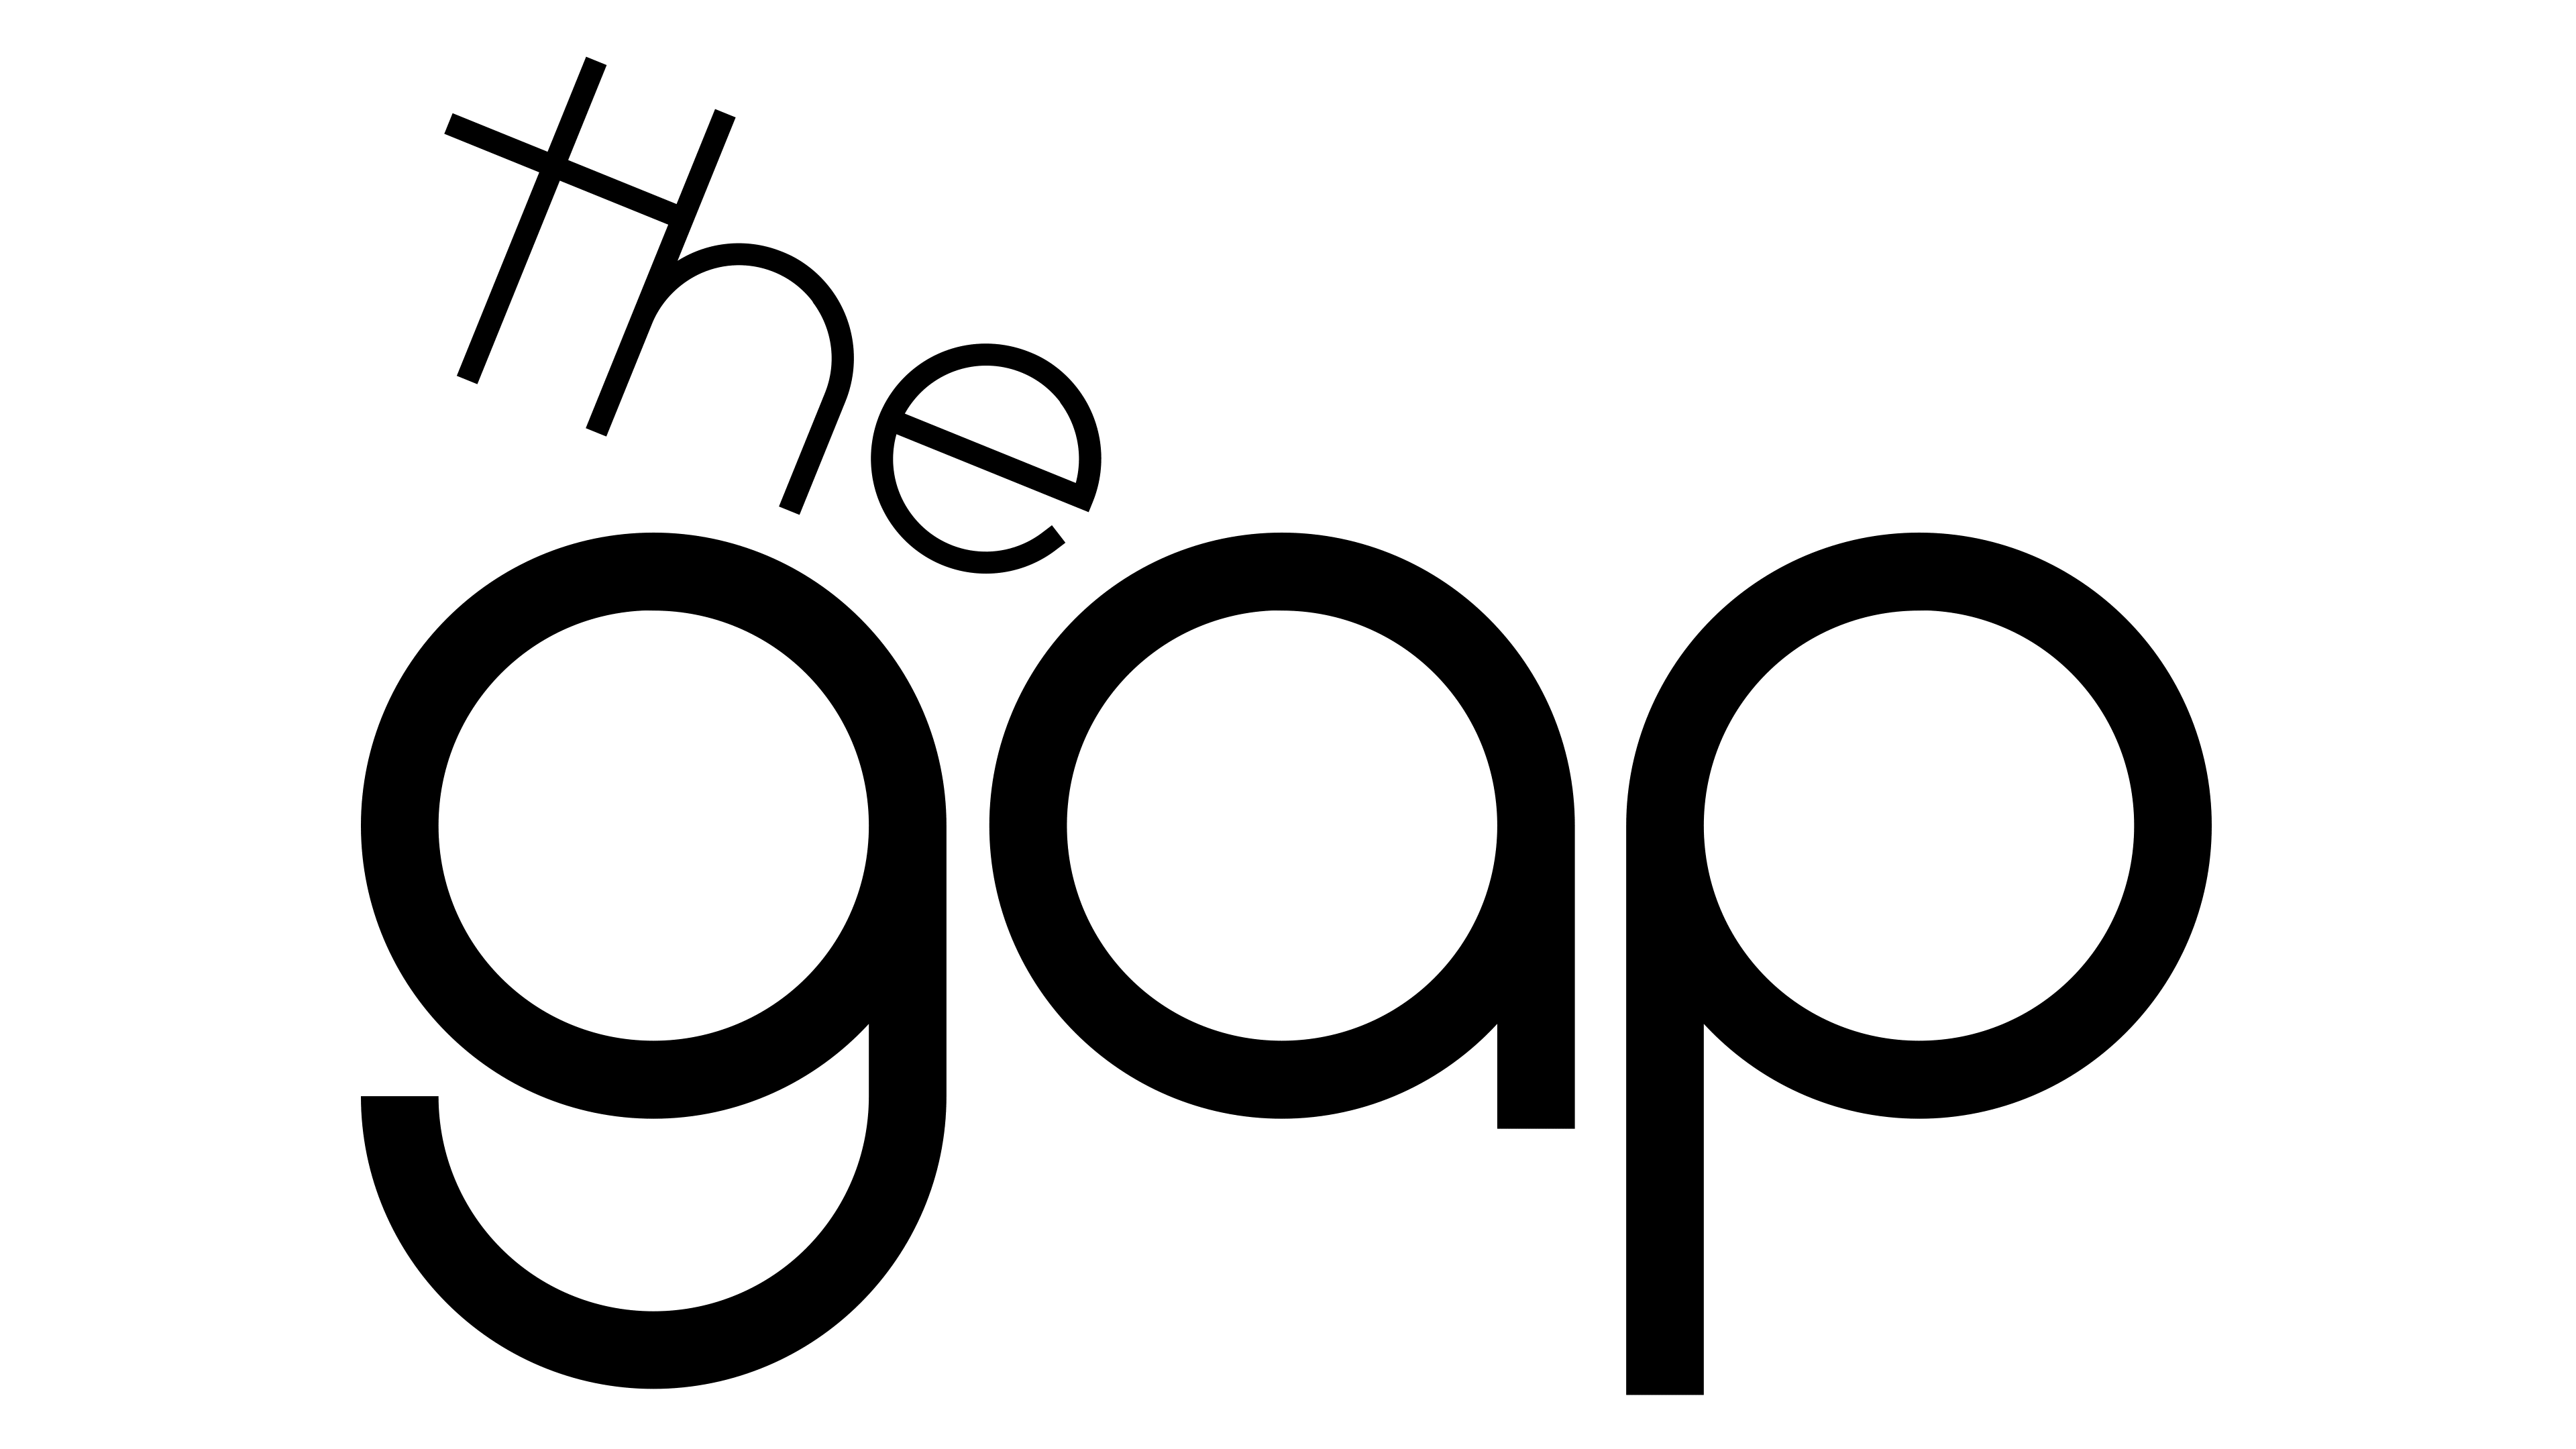 Logo Gap Download HD PNG Image